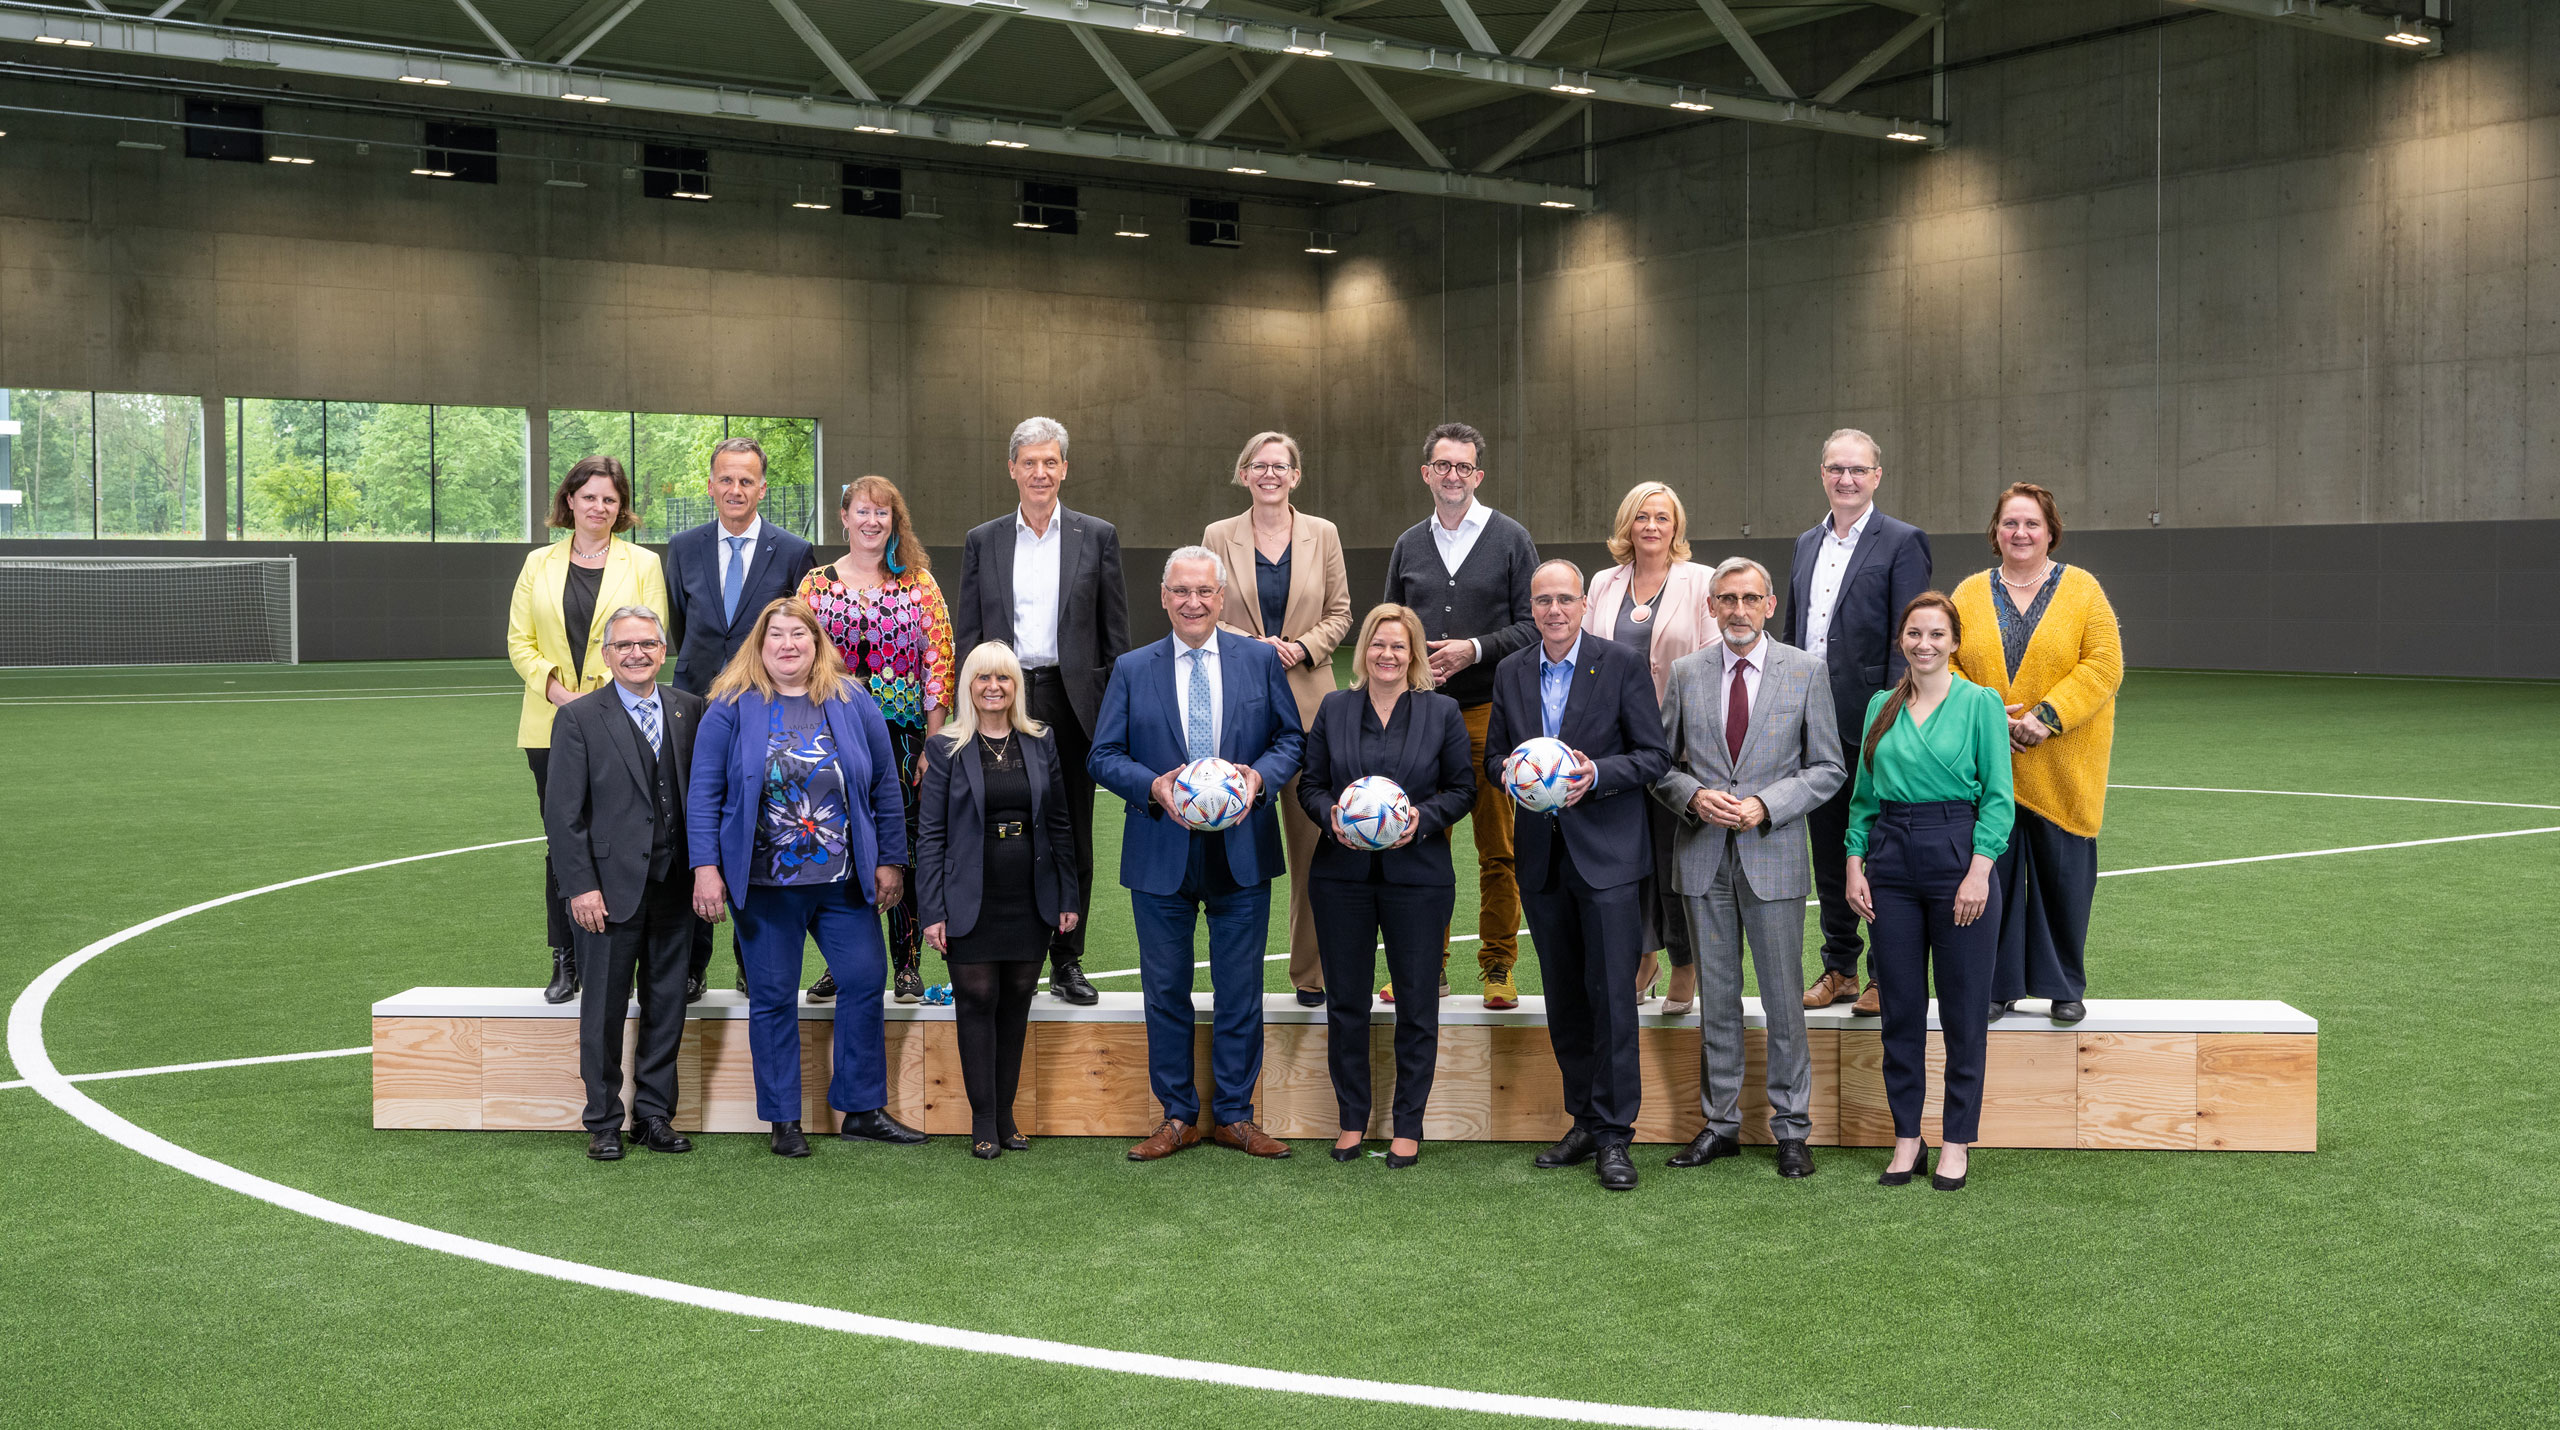 Die Sportministerinnen und -minister der Länder, die Sportsenatorinnen und -senatoren sowie die Bundessportministerin auf dem DFB-Campus in Frankfurt am Main